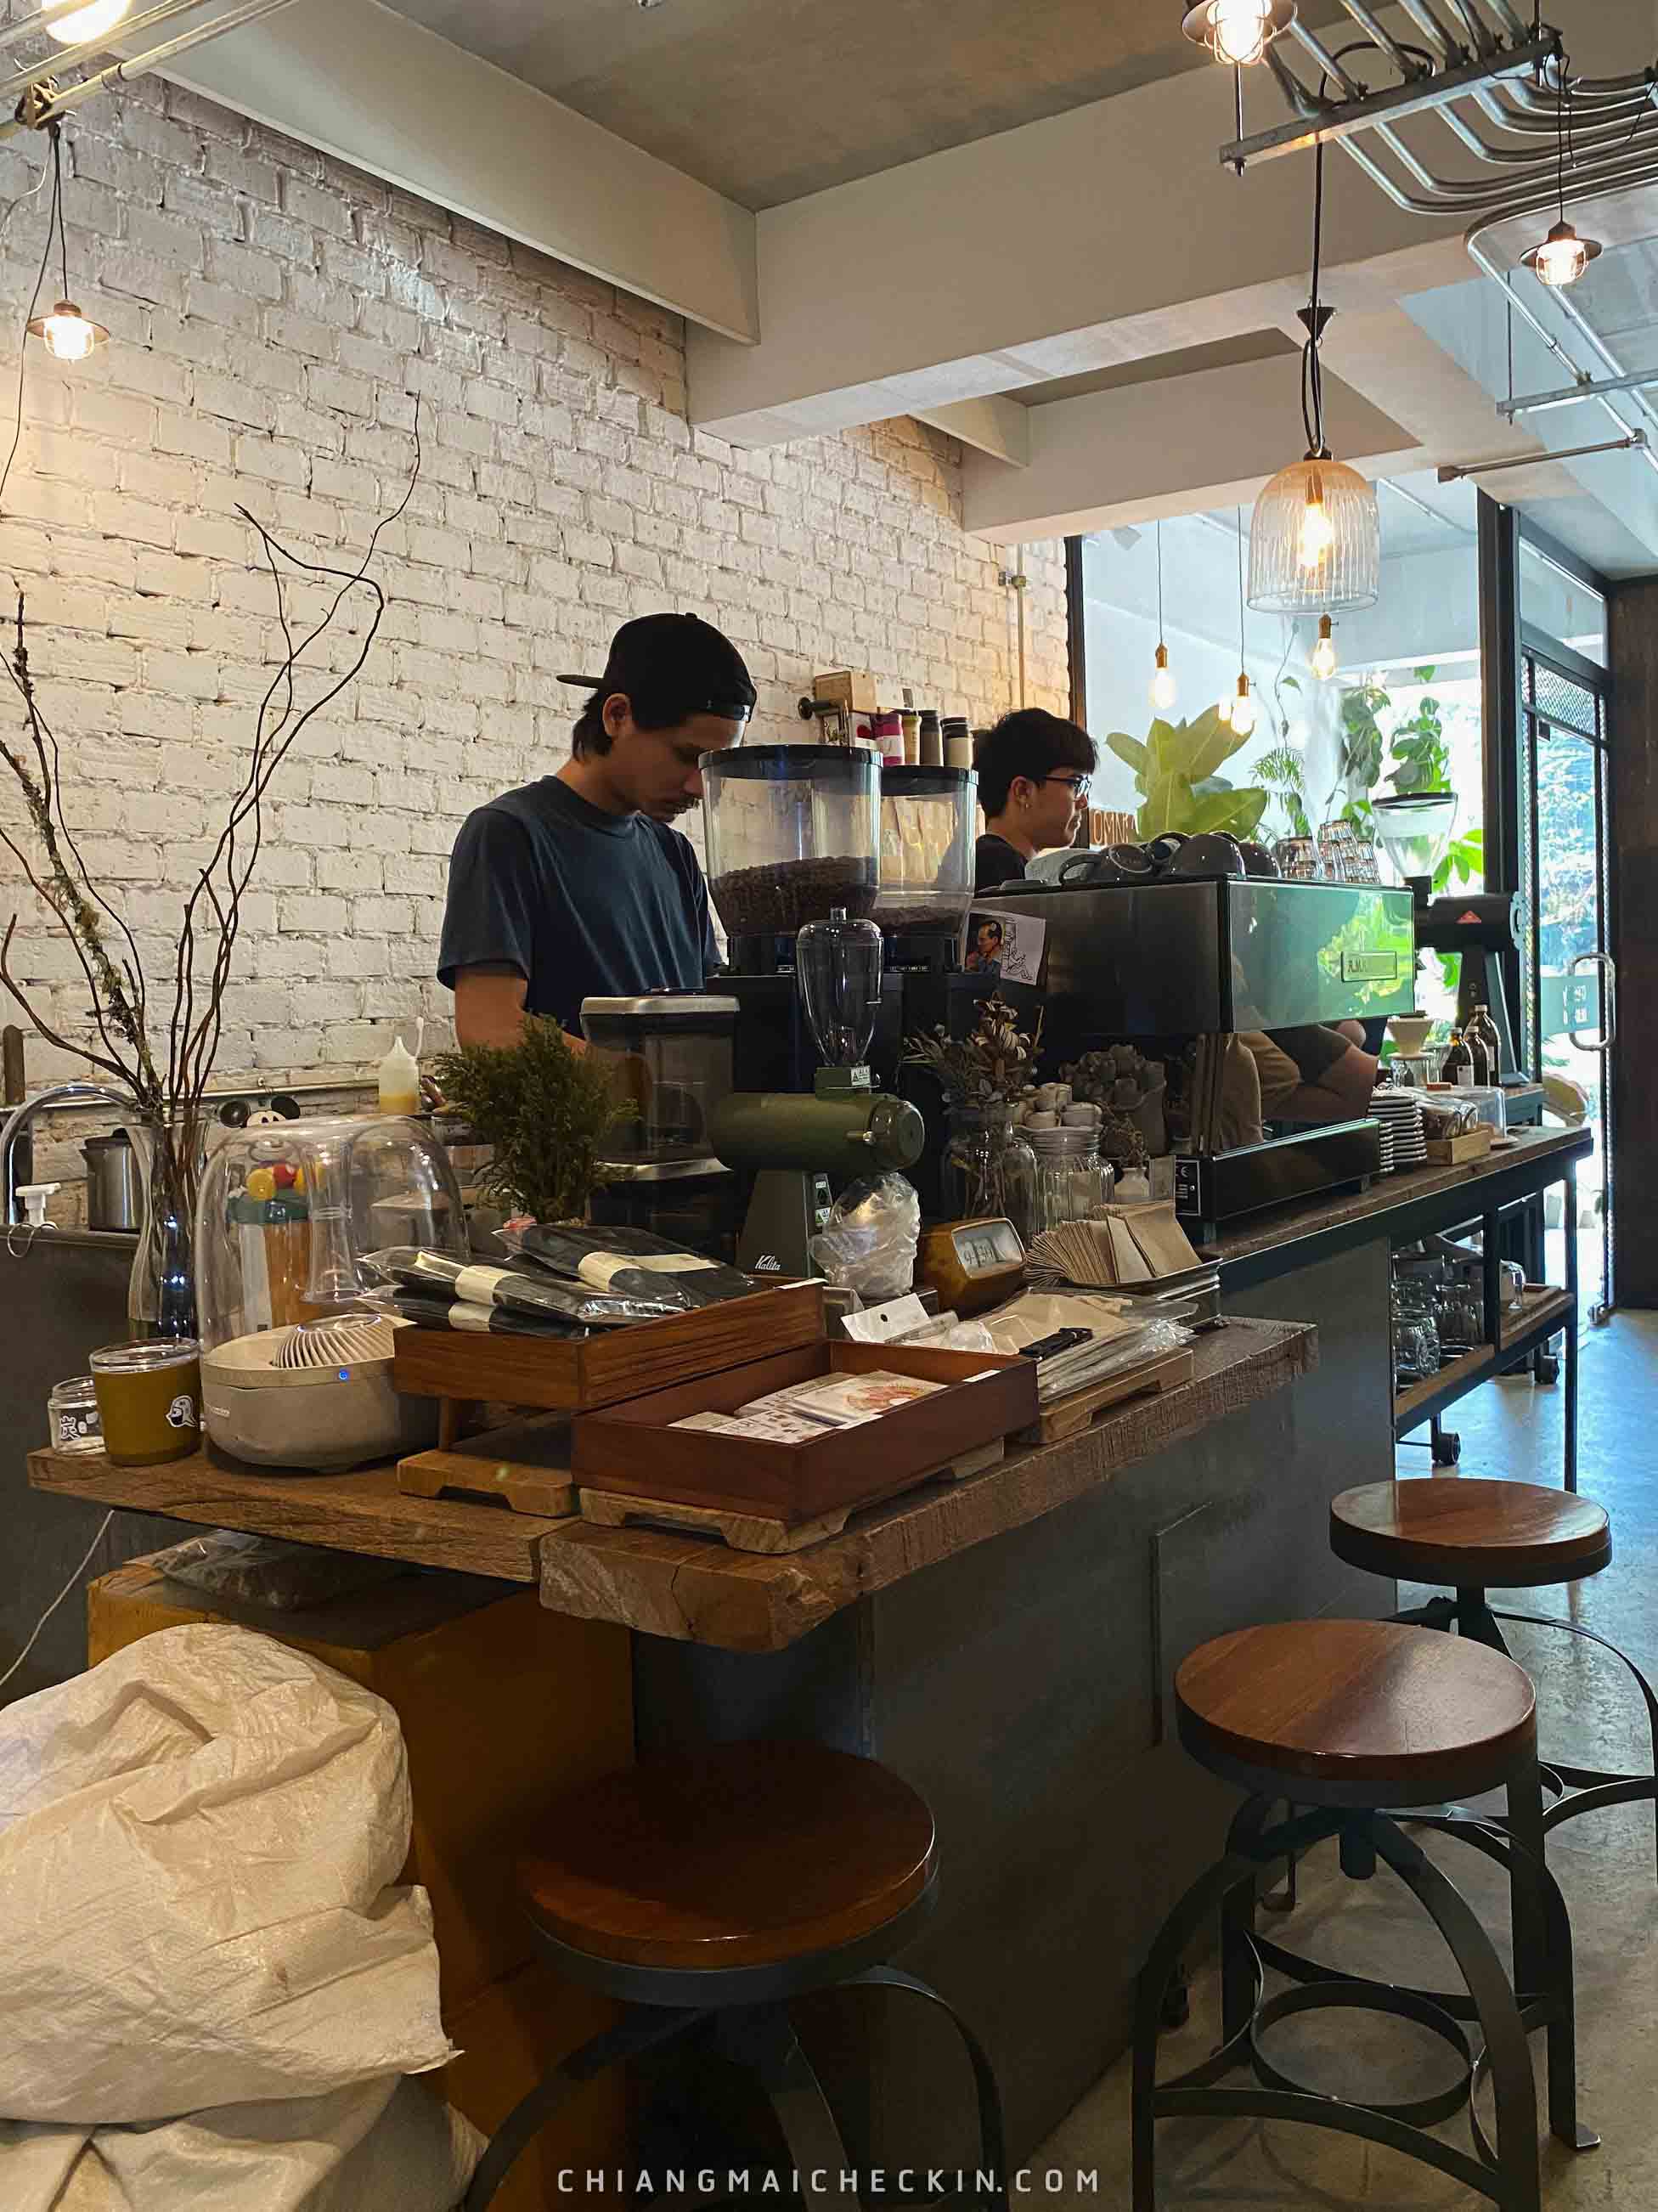 Omnia Cafe and Roastery คาเฟ่กาแฟแนวเทรดดิชั่นการชงจะเน้นรสชาติของกาแฟจริงๆ บรรยากาศร้านออกแนวธรรมชาติ